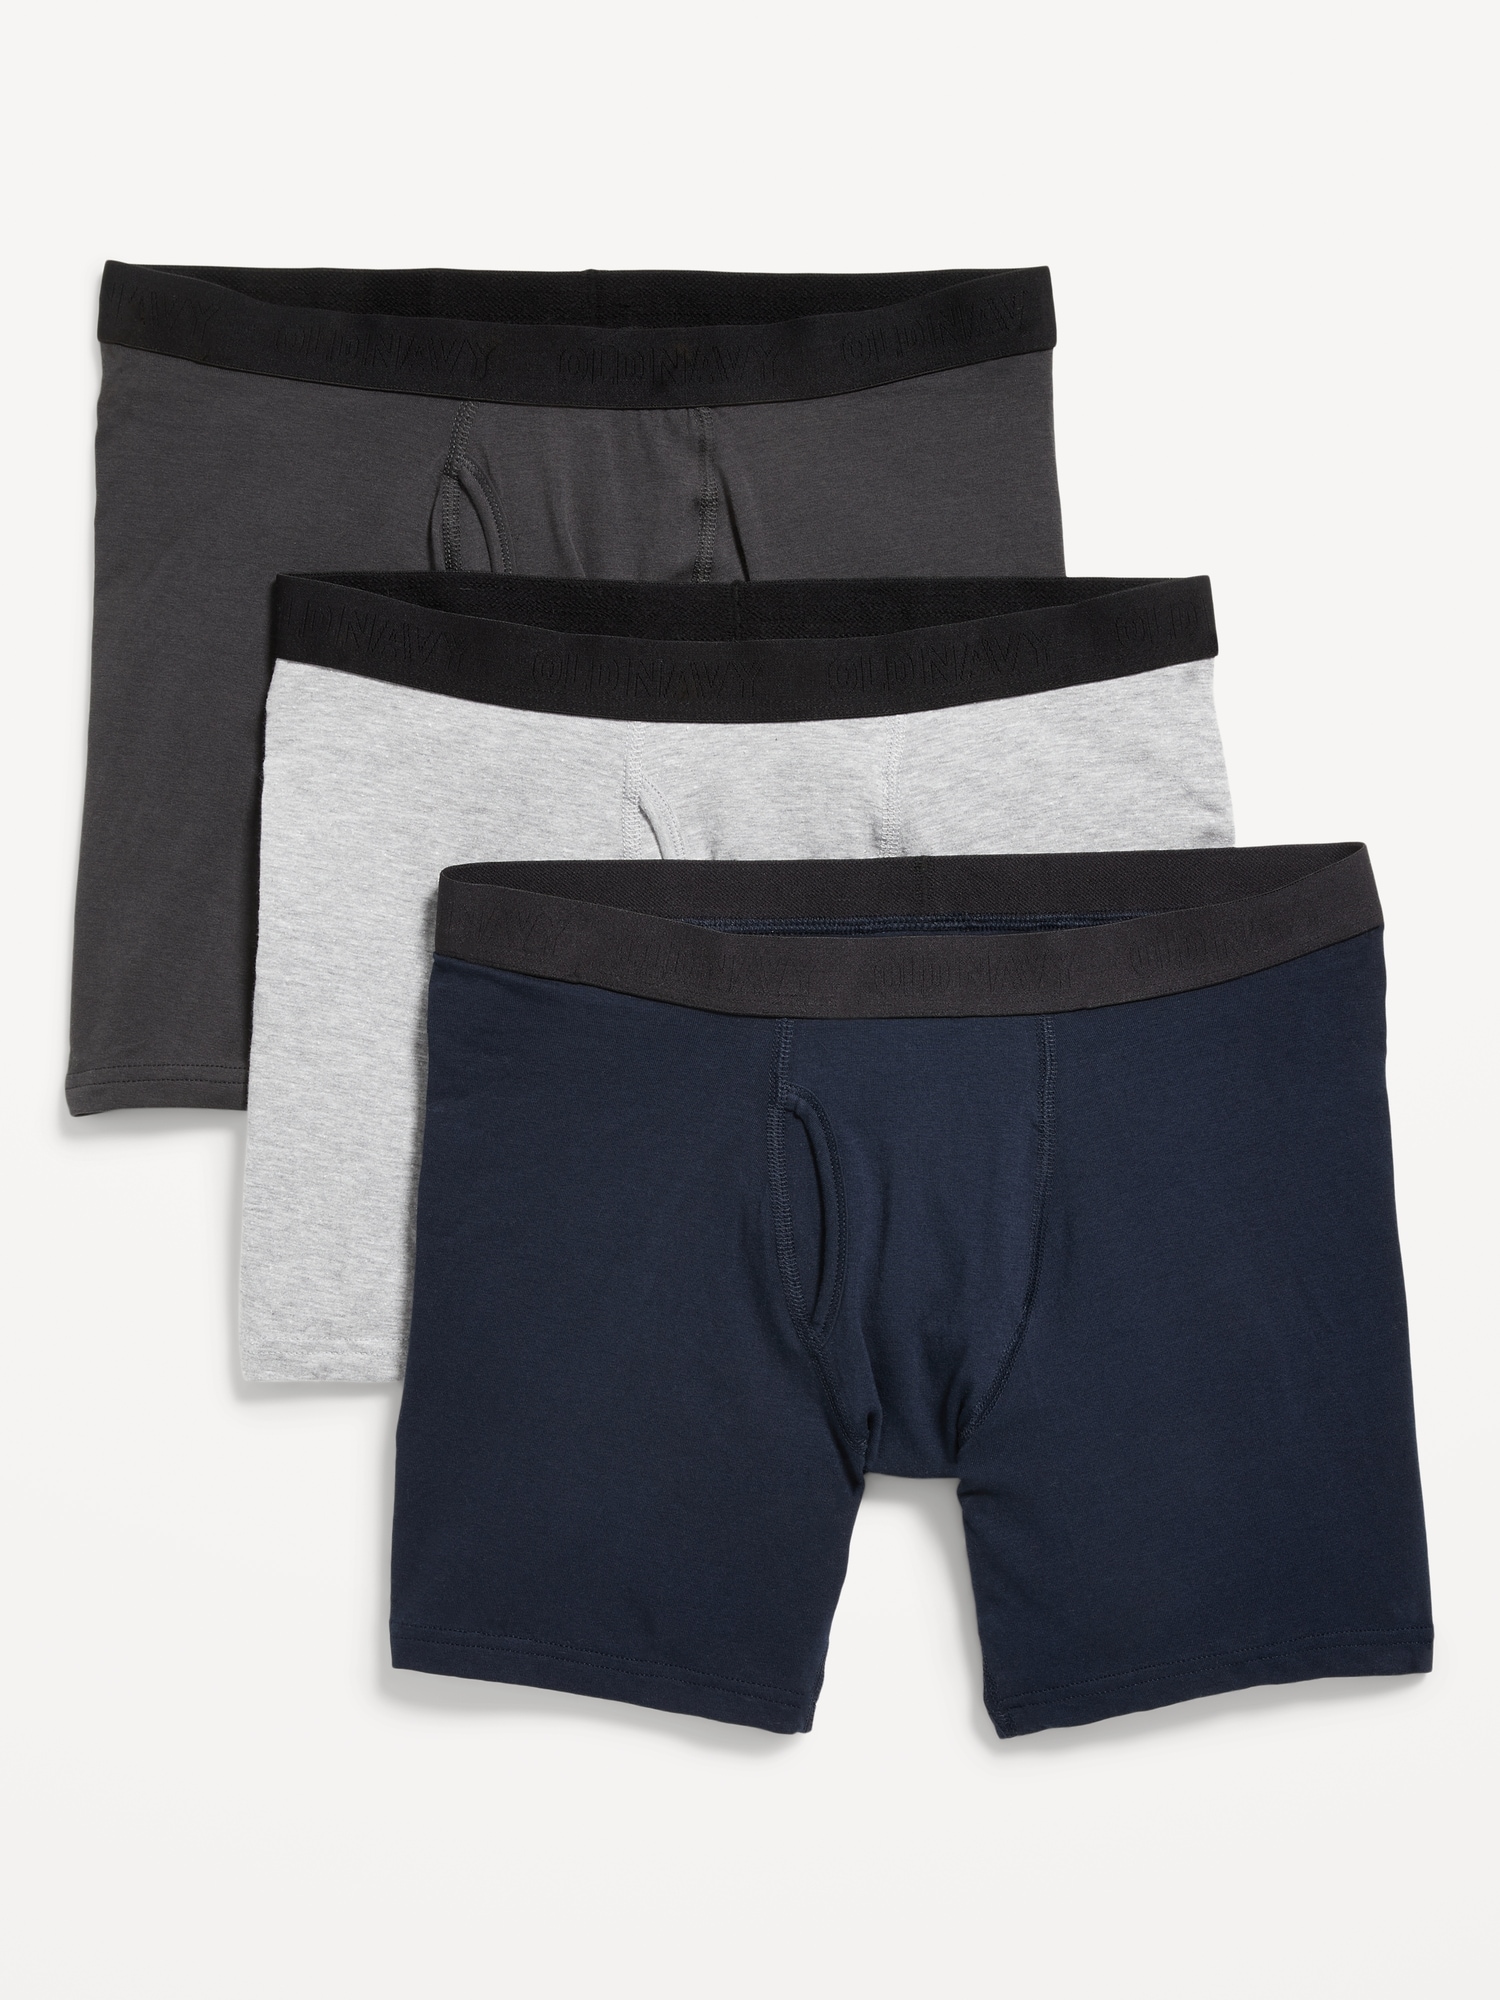 Soft-Washed 3-Pack Modal Boxer-Brief Underwear -- 6-inch inseam